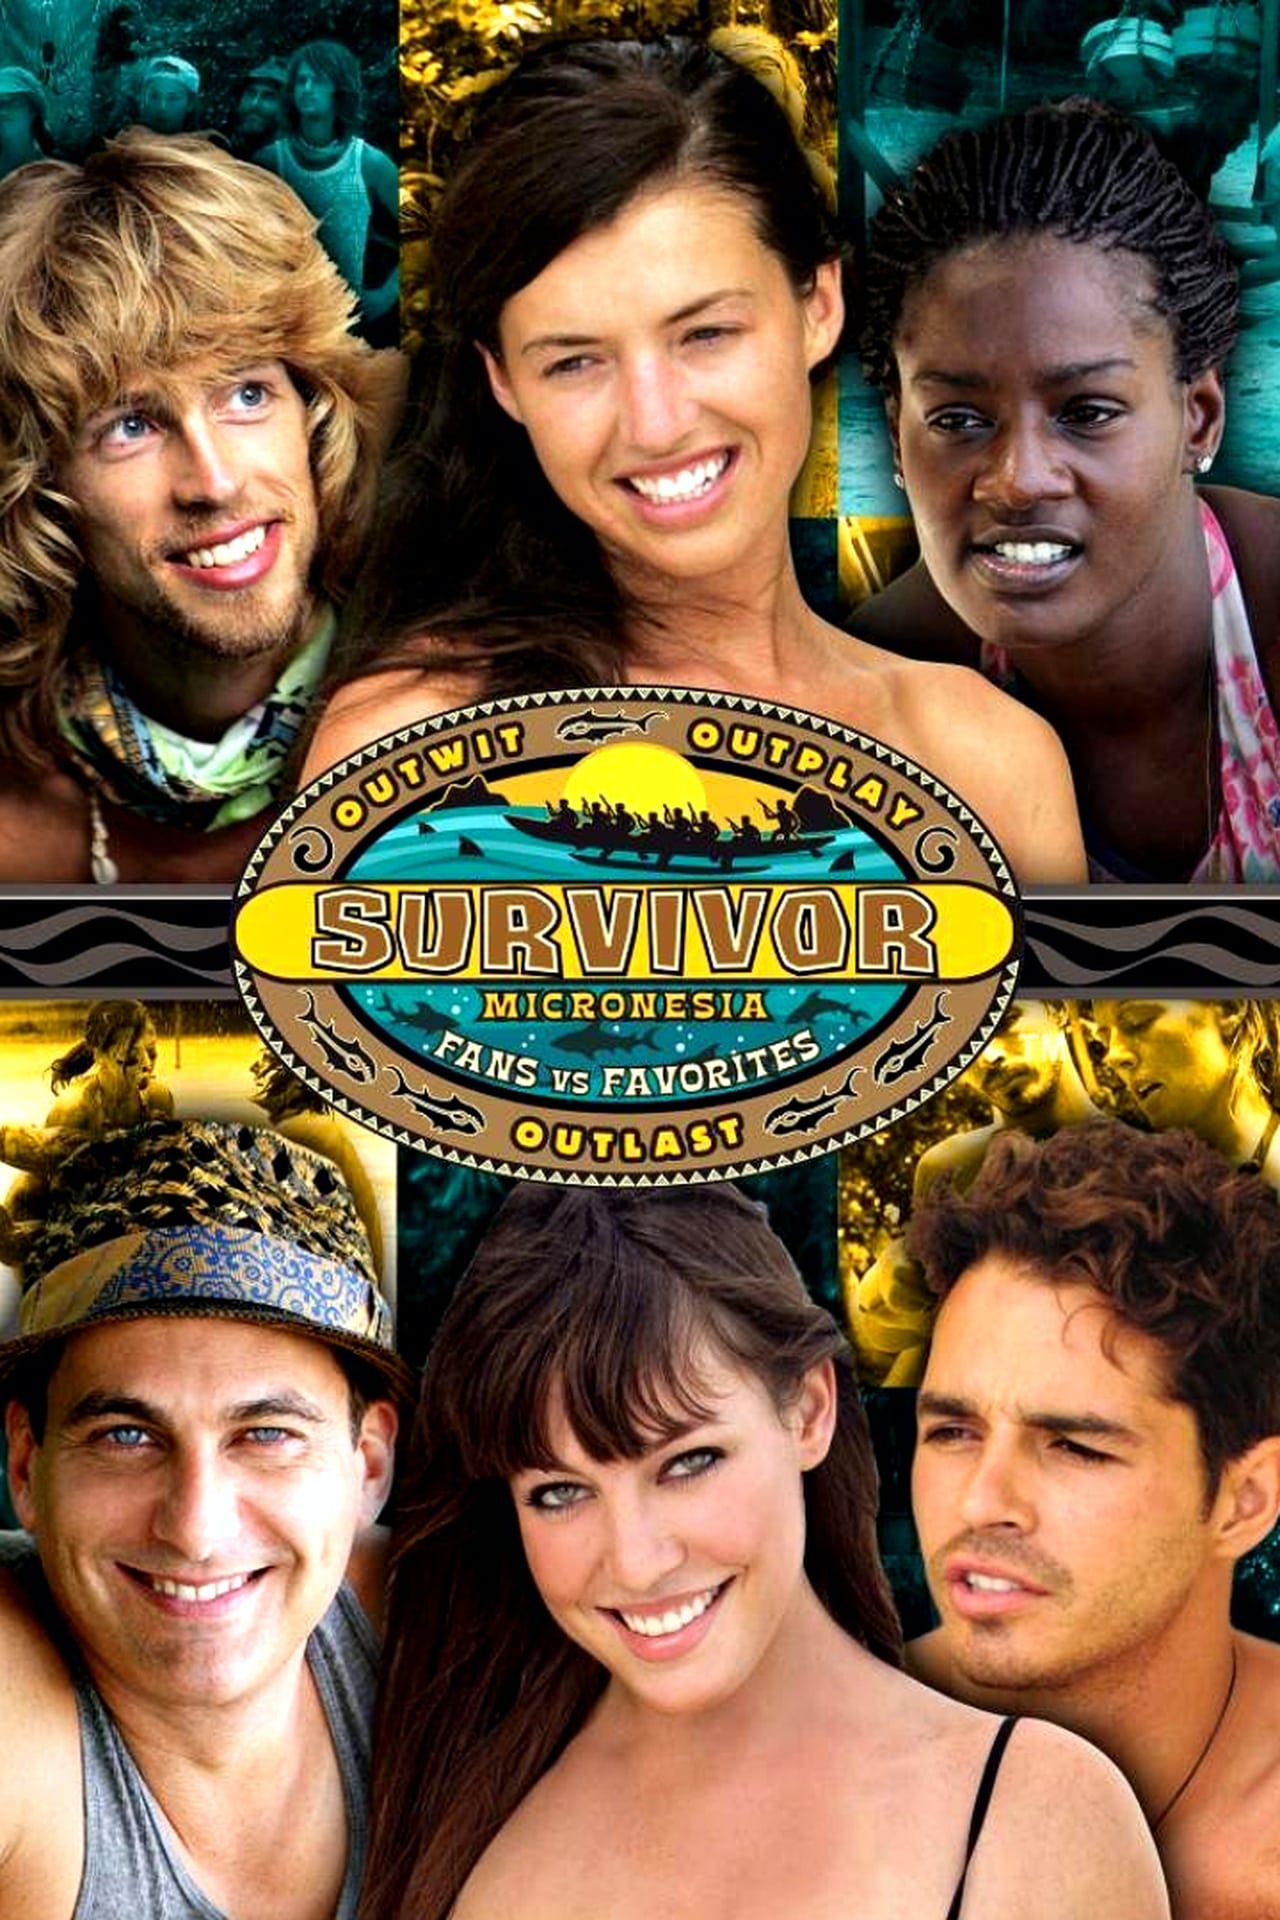 Survivor Season 16